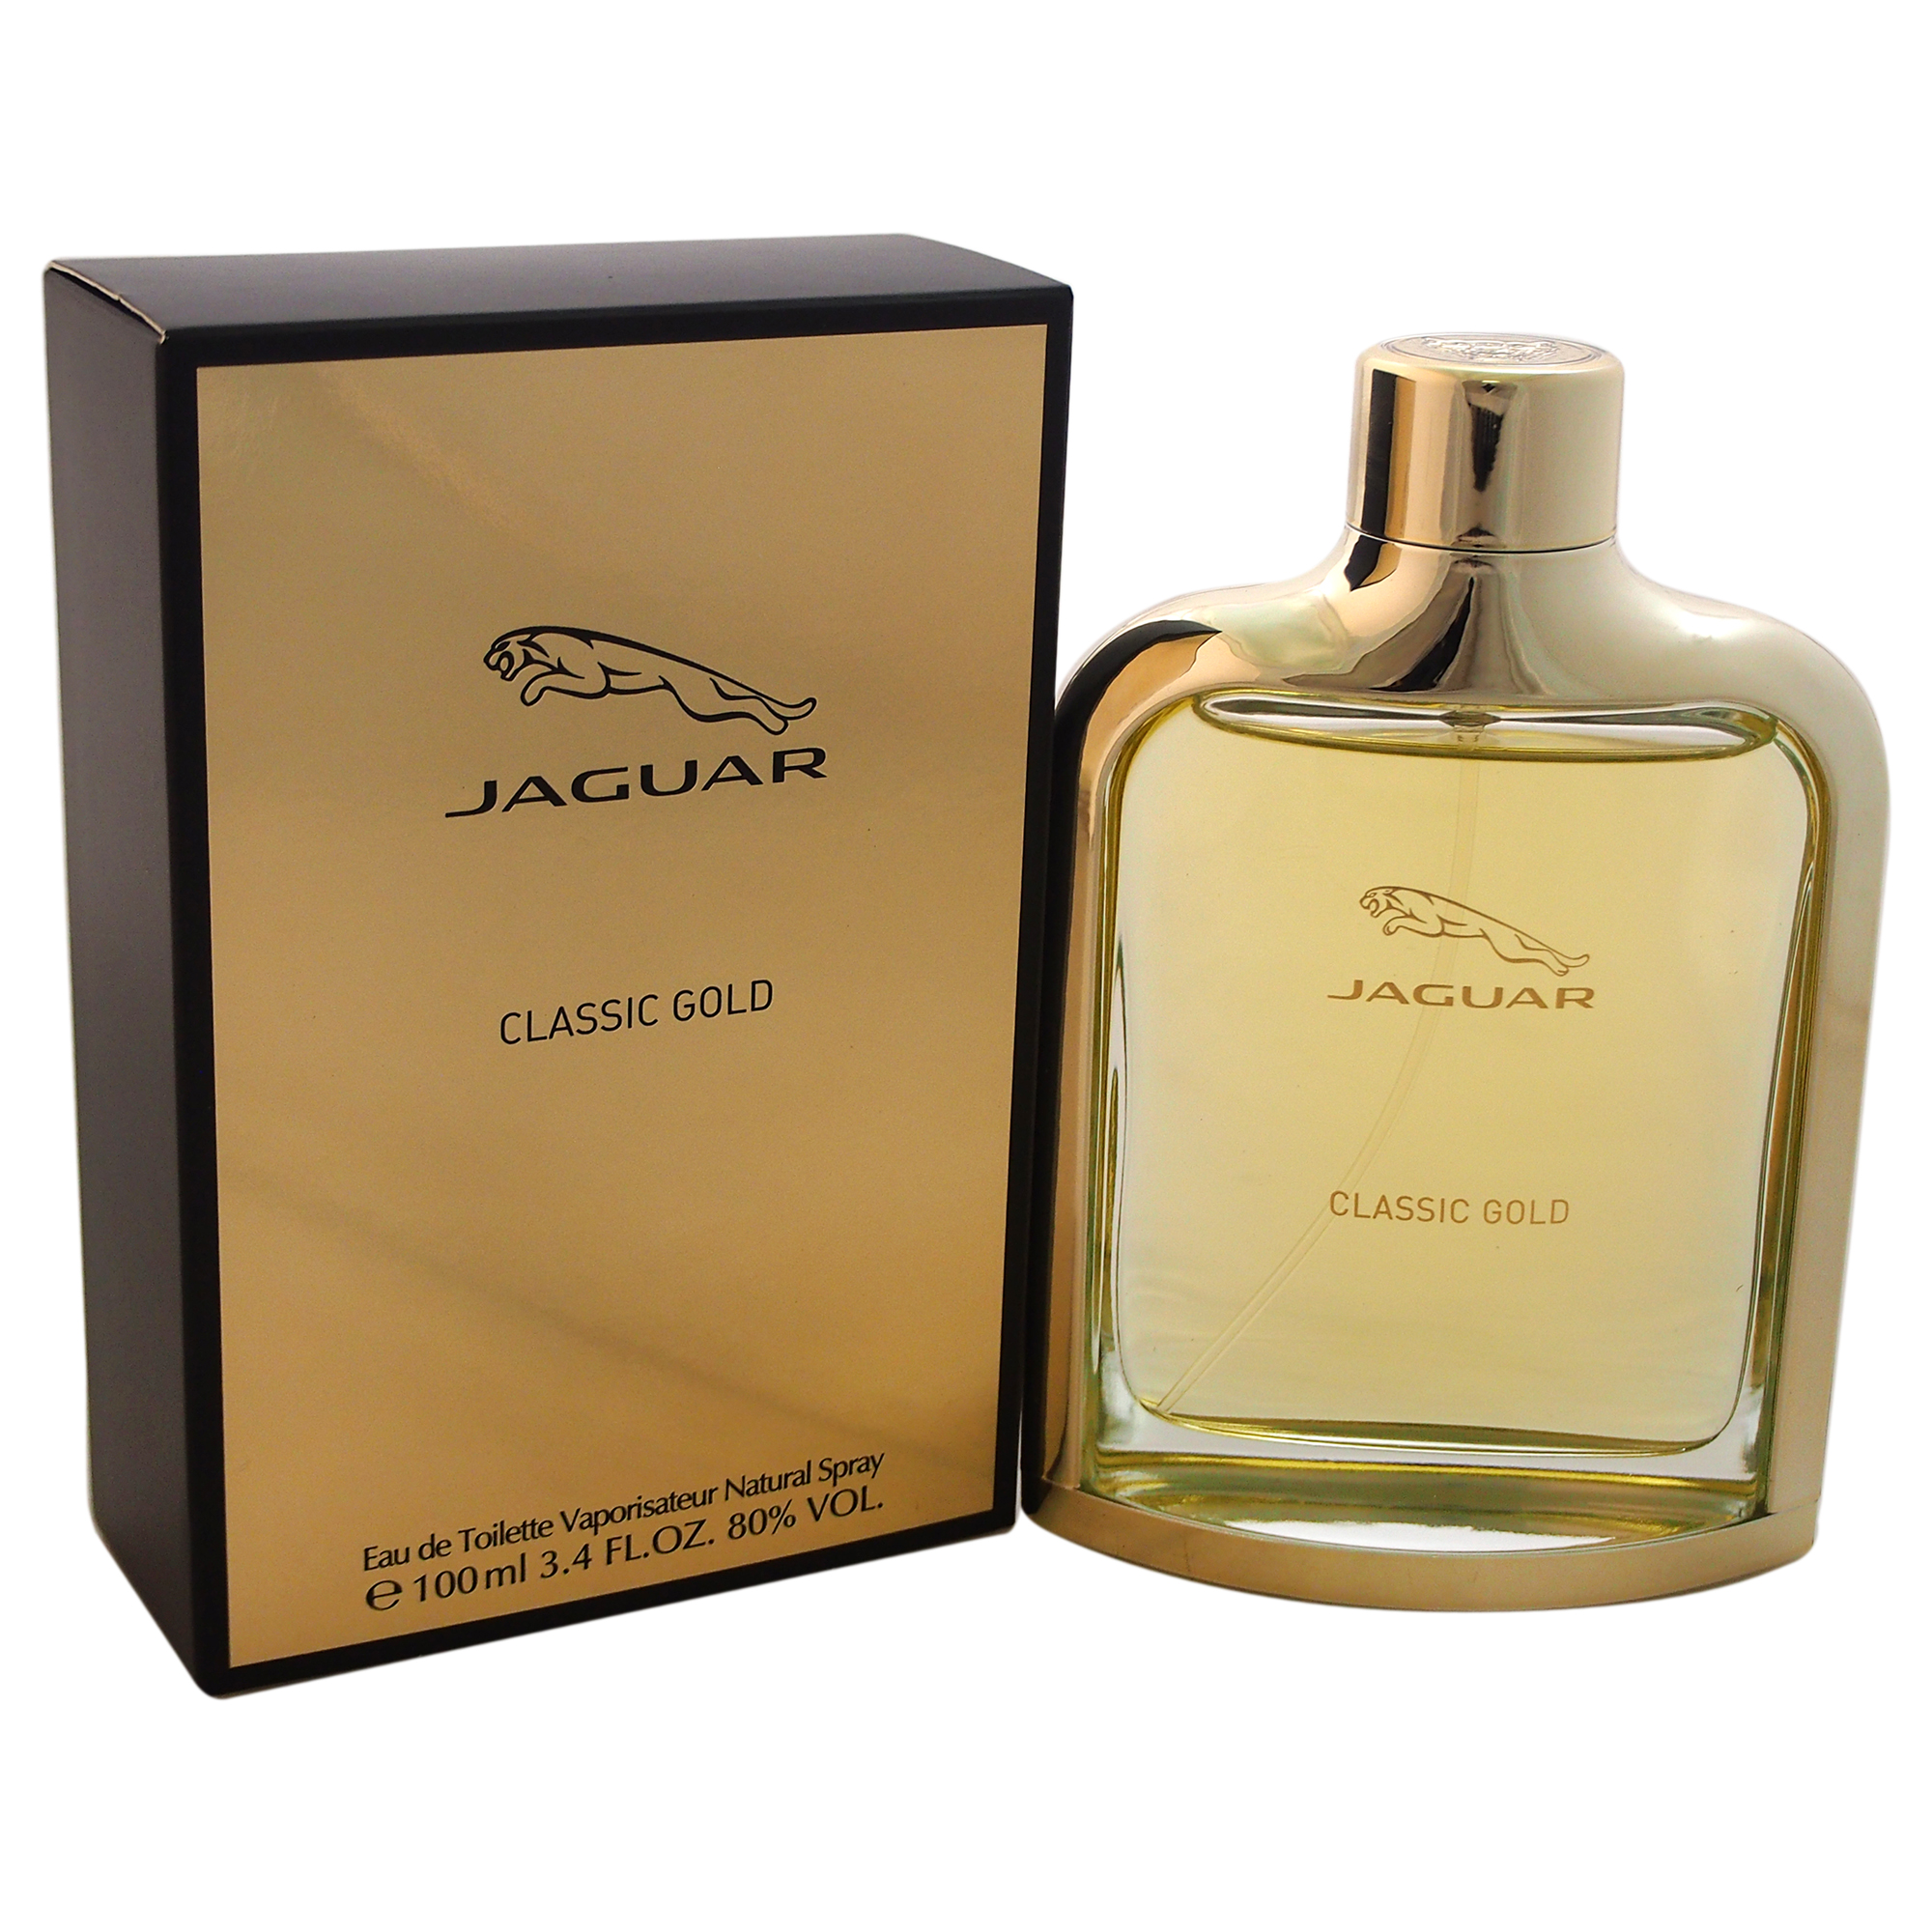 JAGUAR CLASSIC GOLD by Jaguar for Men - 3.4 oz EDT Spray